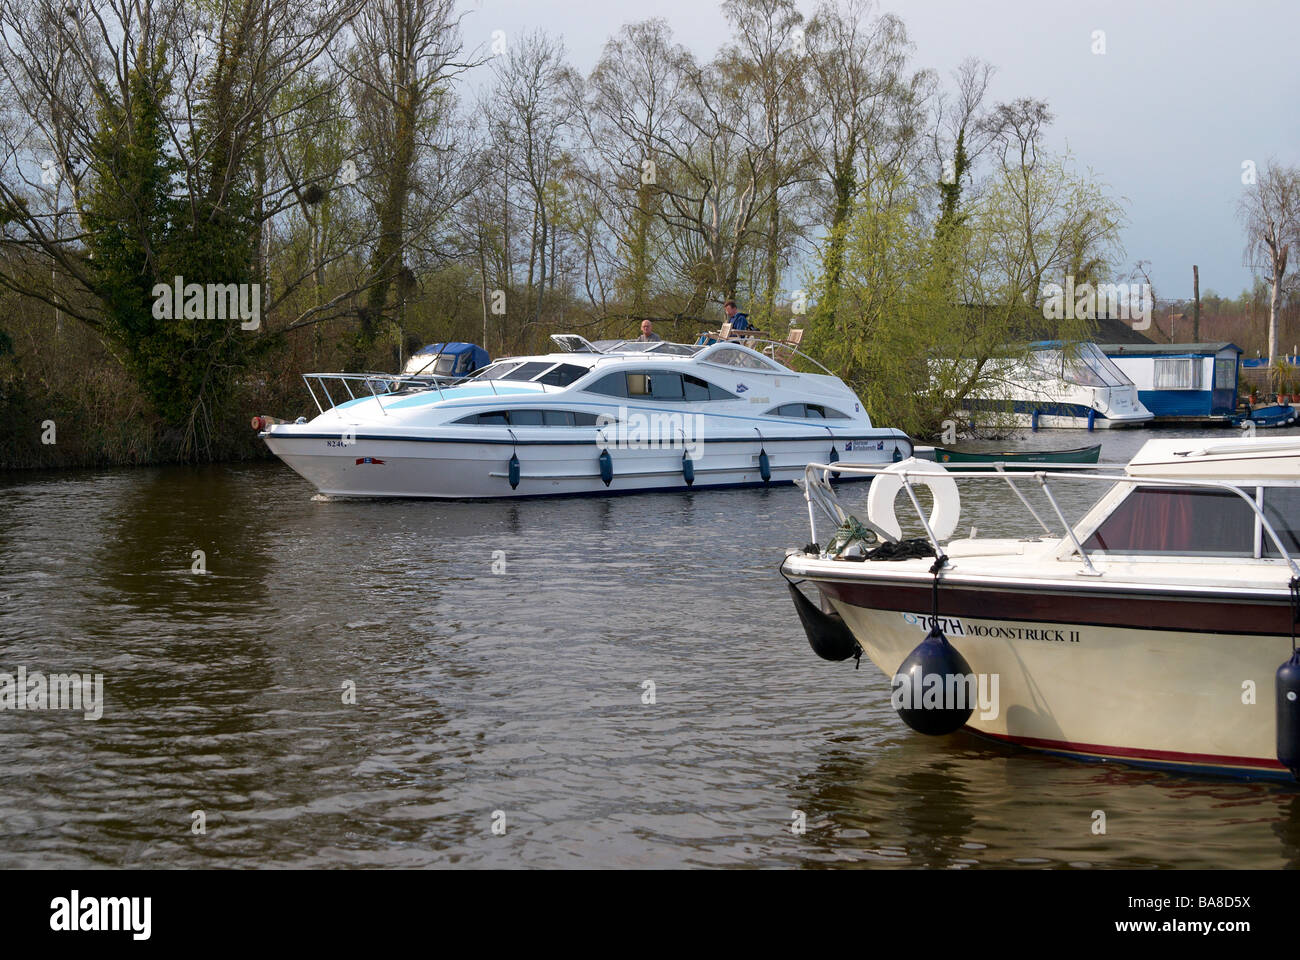 La rivière Bure à Horning Reach sur les Norfolk Broads, l'Angleterre avec motor cruiser et lancer un jour de printemps. Banque D'Images